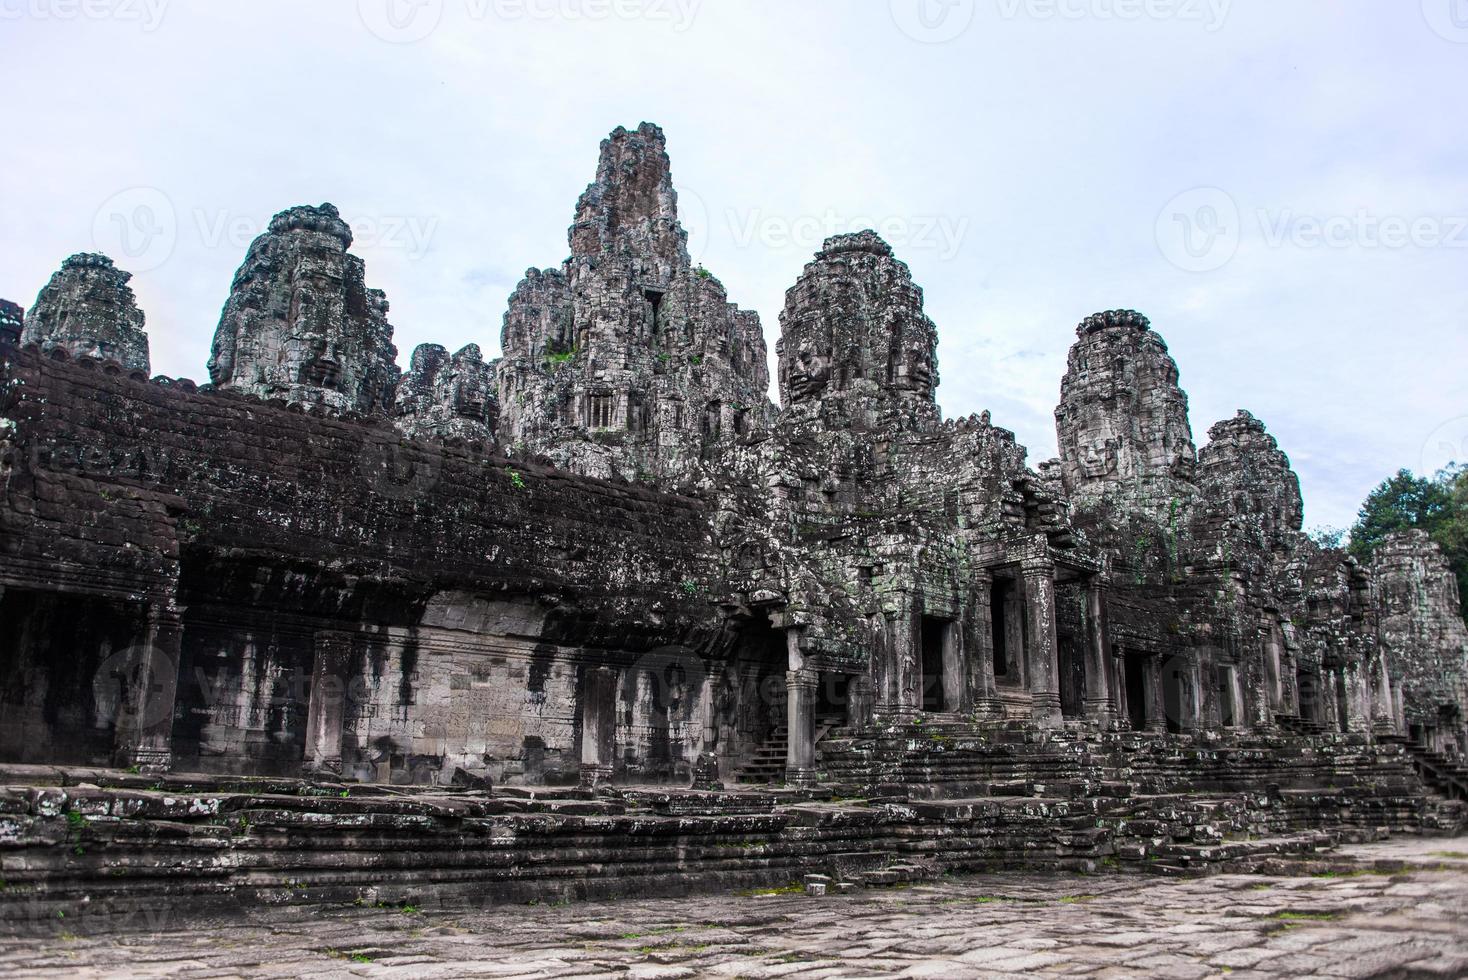 prasat bayon com rostos sorridentes de pedra é o templo central do complexo de angkor thom, siem reap, camboja. arquitetura khmer antiga e famoso marco cambojano, patrimônio mundial. foto